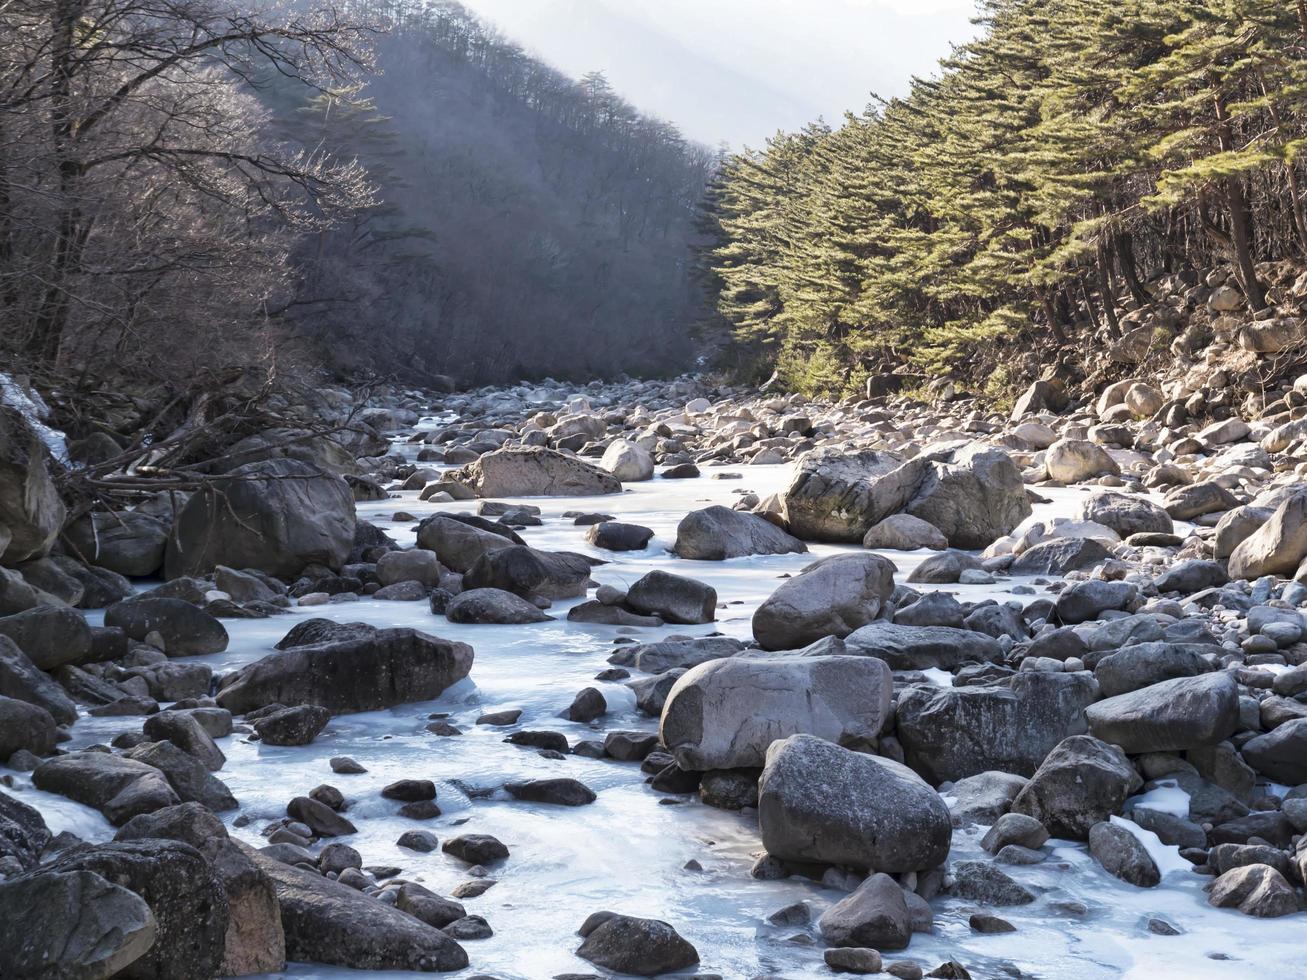 rivière de montagne gelée dans le parc national de seoraksan, corée du sud photo